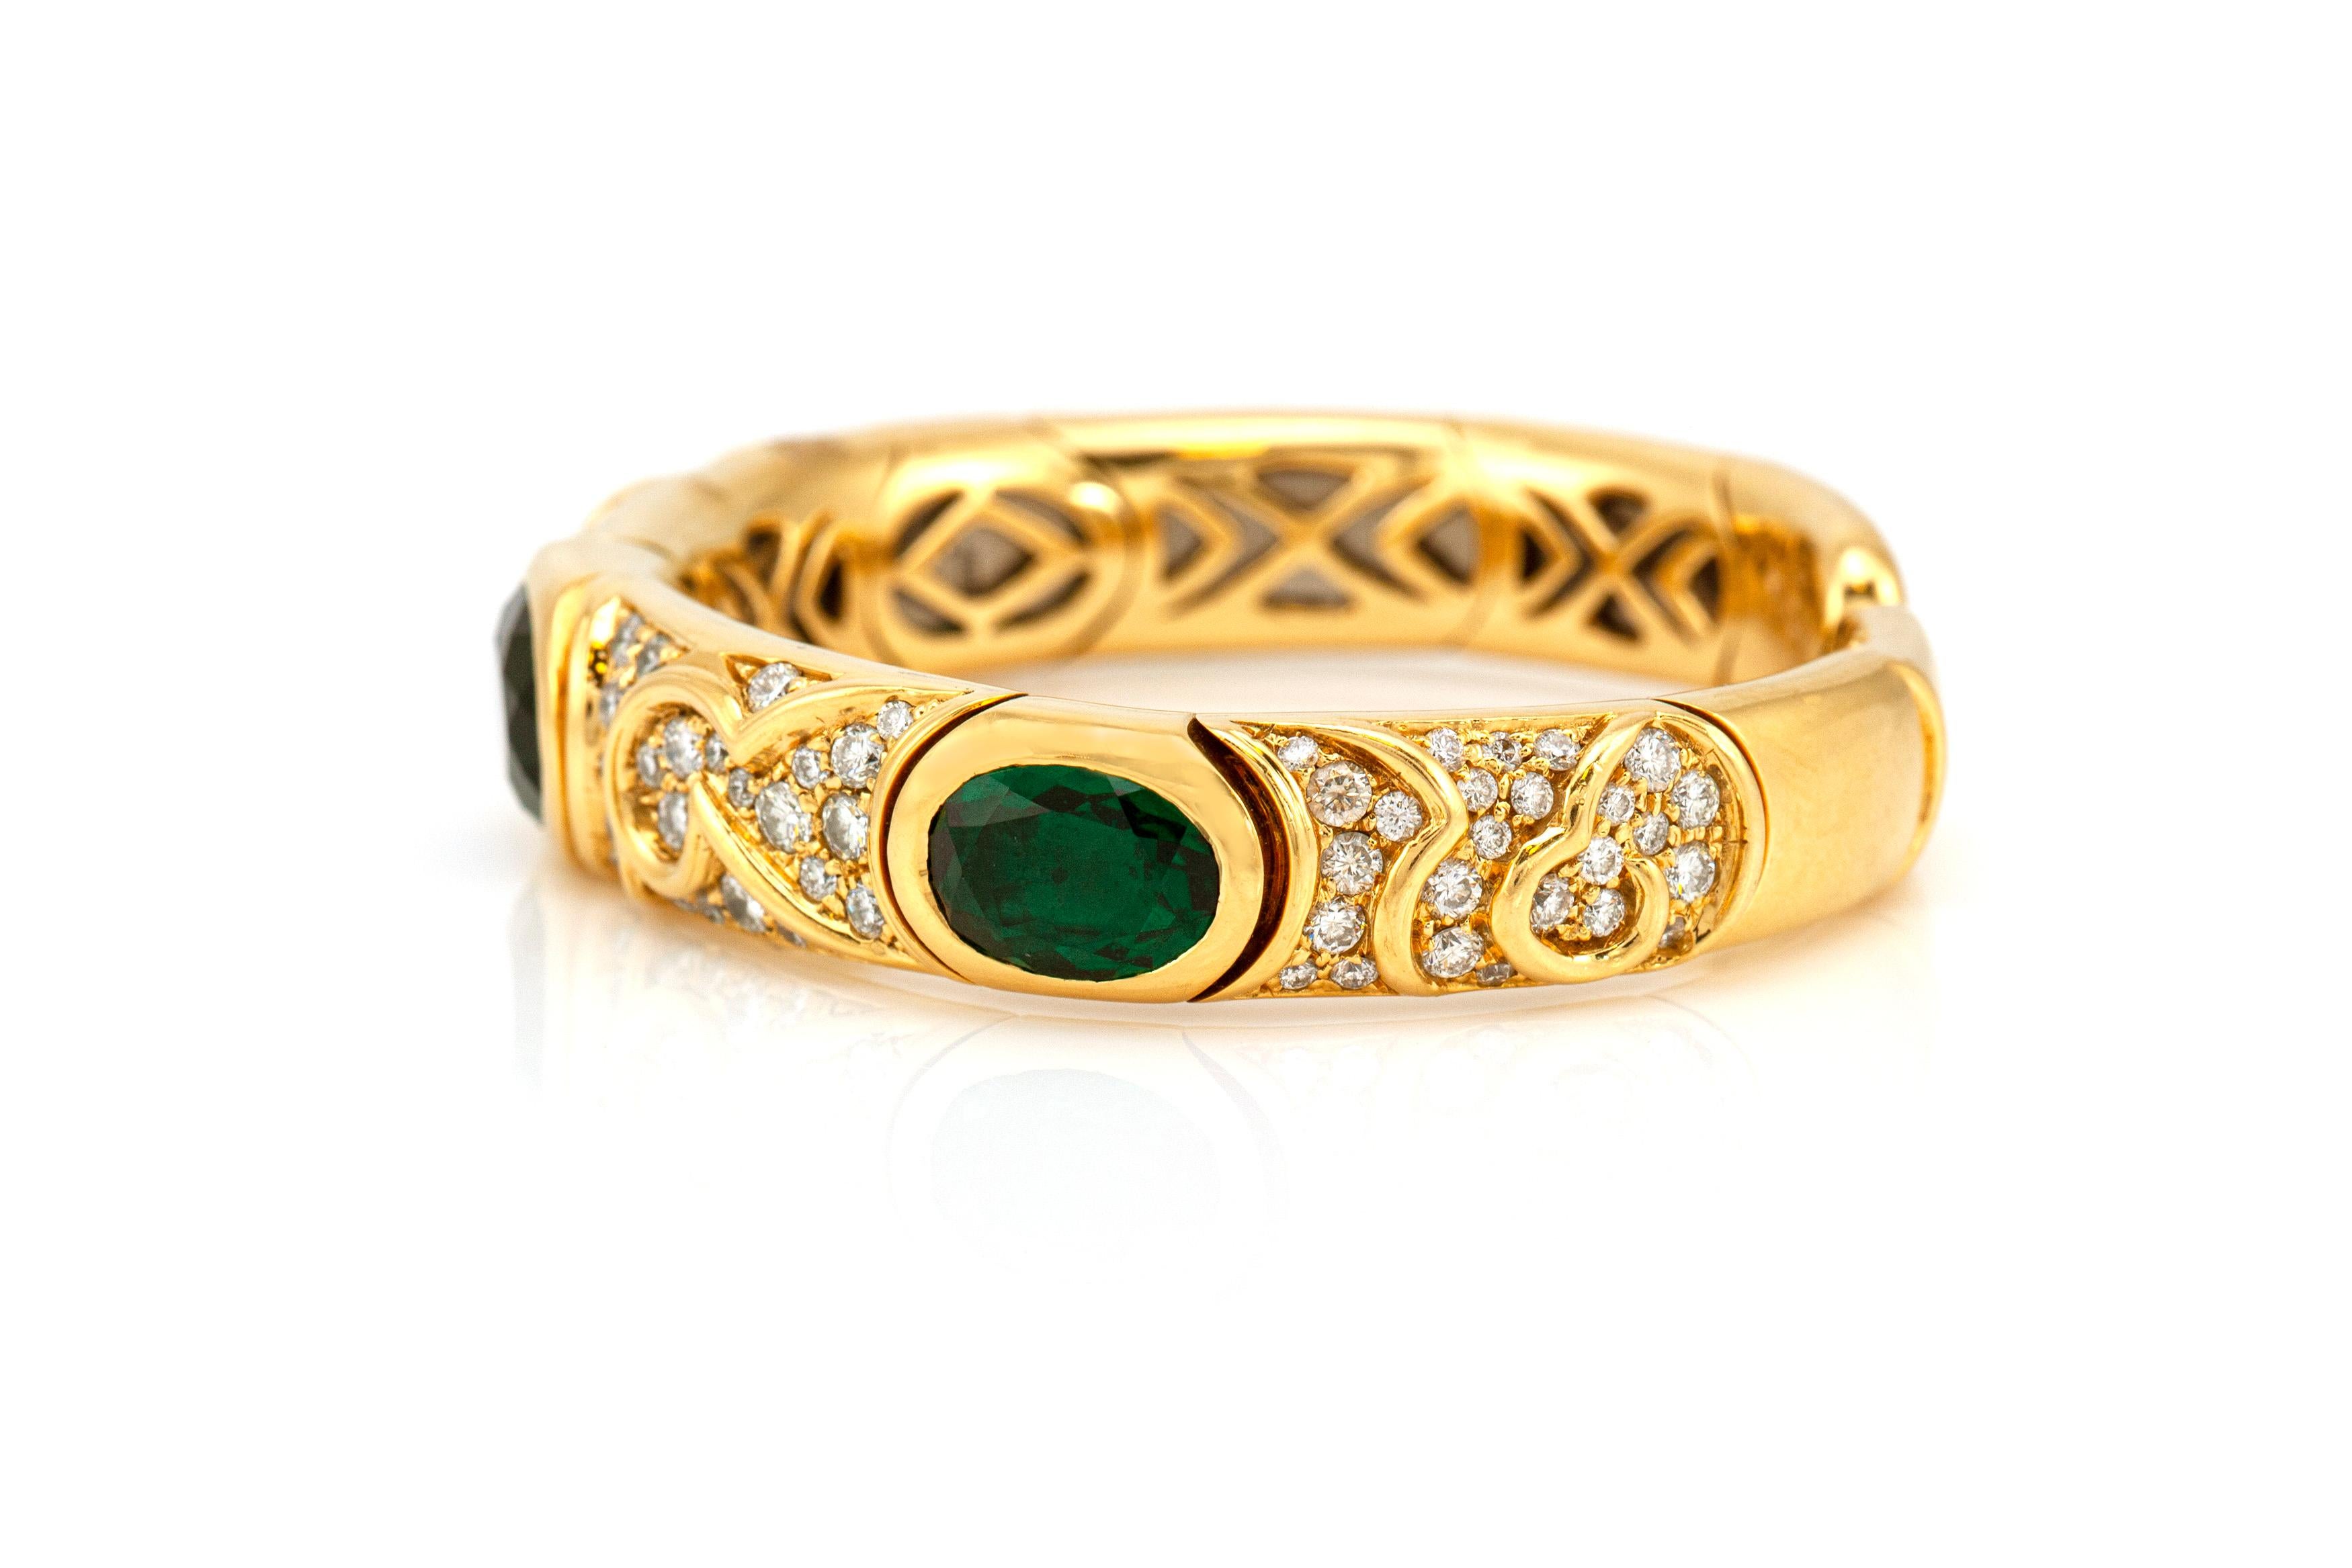 Dieses wunderschöne Armband von Marina B ist aus 18 Karat Gelbgold mit grünem Turmalin und Diamanten gefertigt. 
Die Diamanten wiegen ca. 5,00 CT.